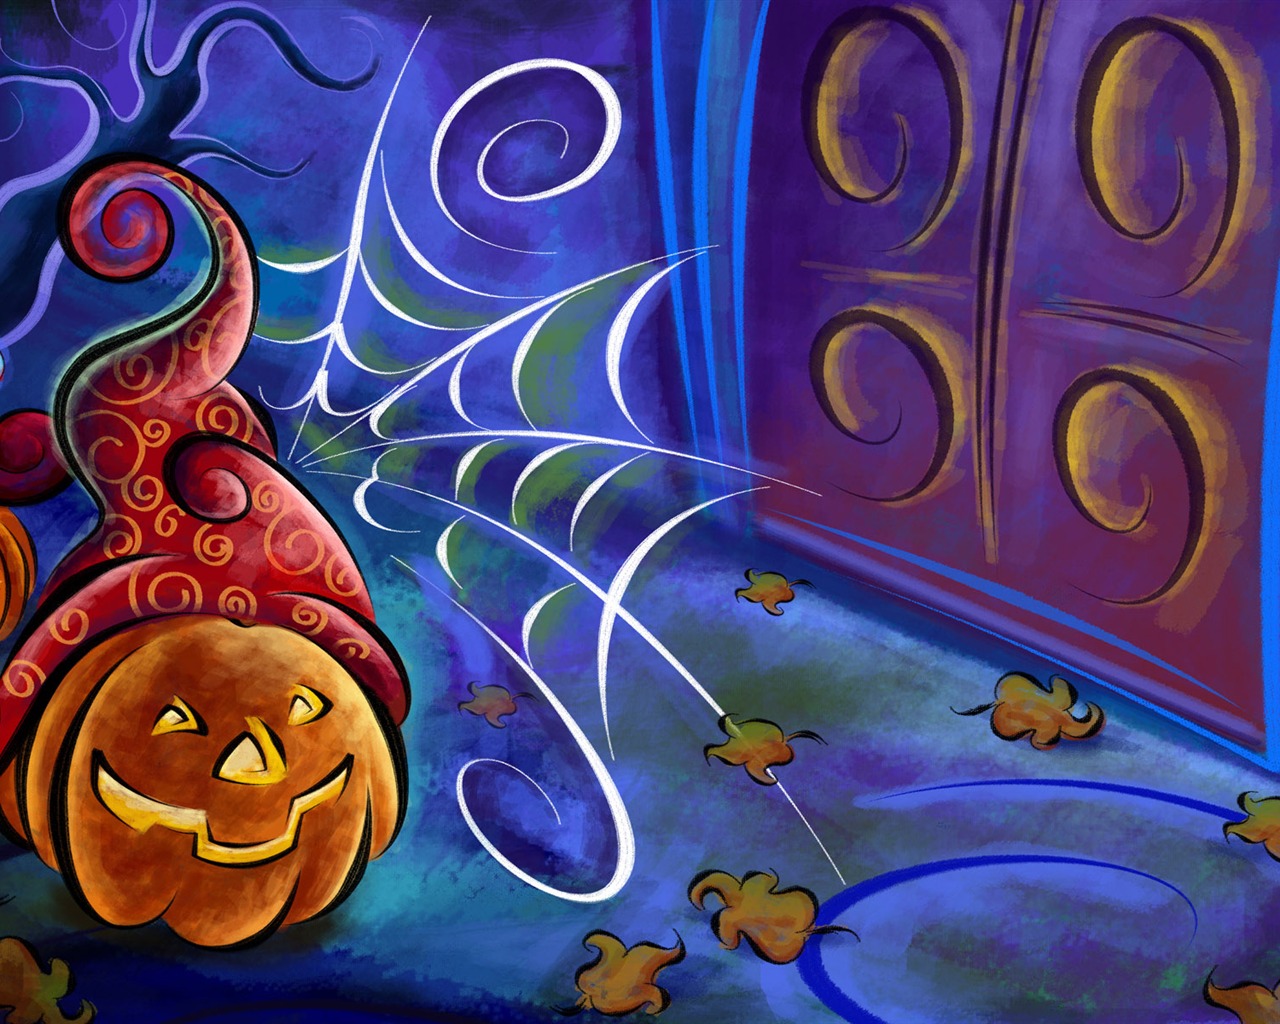 Fondos de Halloween temáticos (5) #16 - 1280x1024